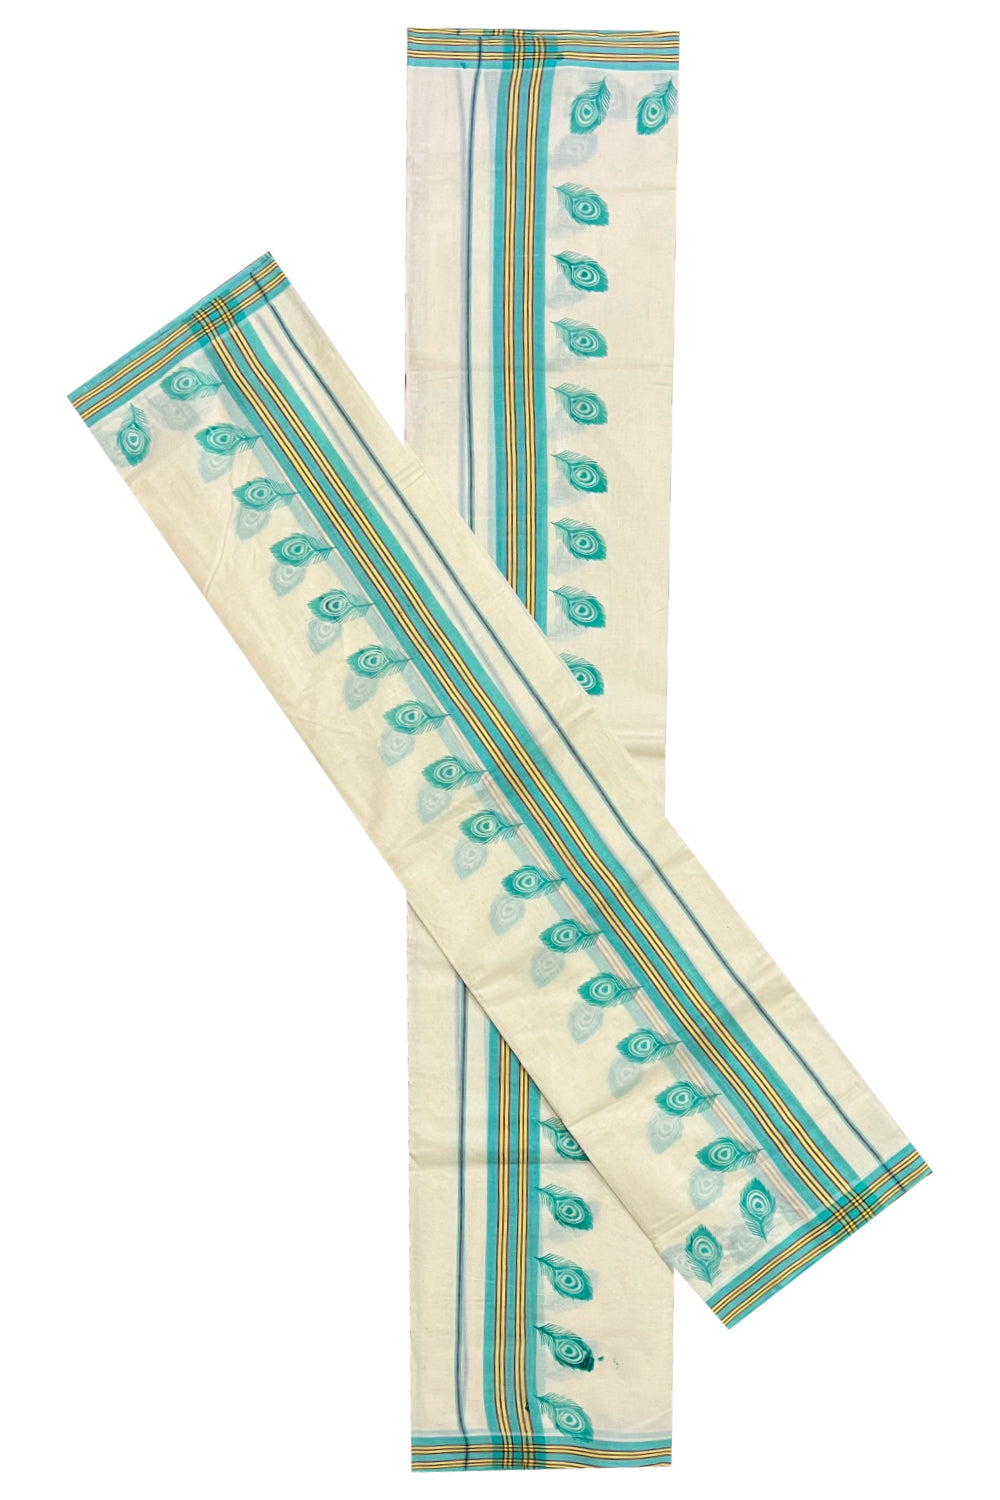 Pure Cotton Set Mundu (Mundum Neriyathum) with Turquoise Feather Block Prints on Yellow and Turquoise Border